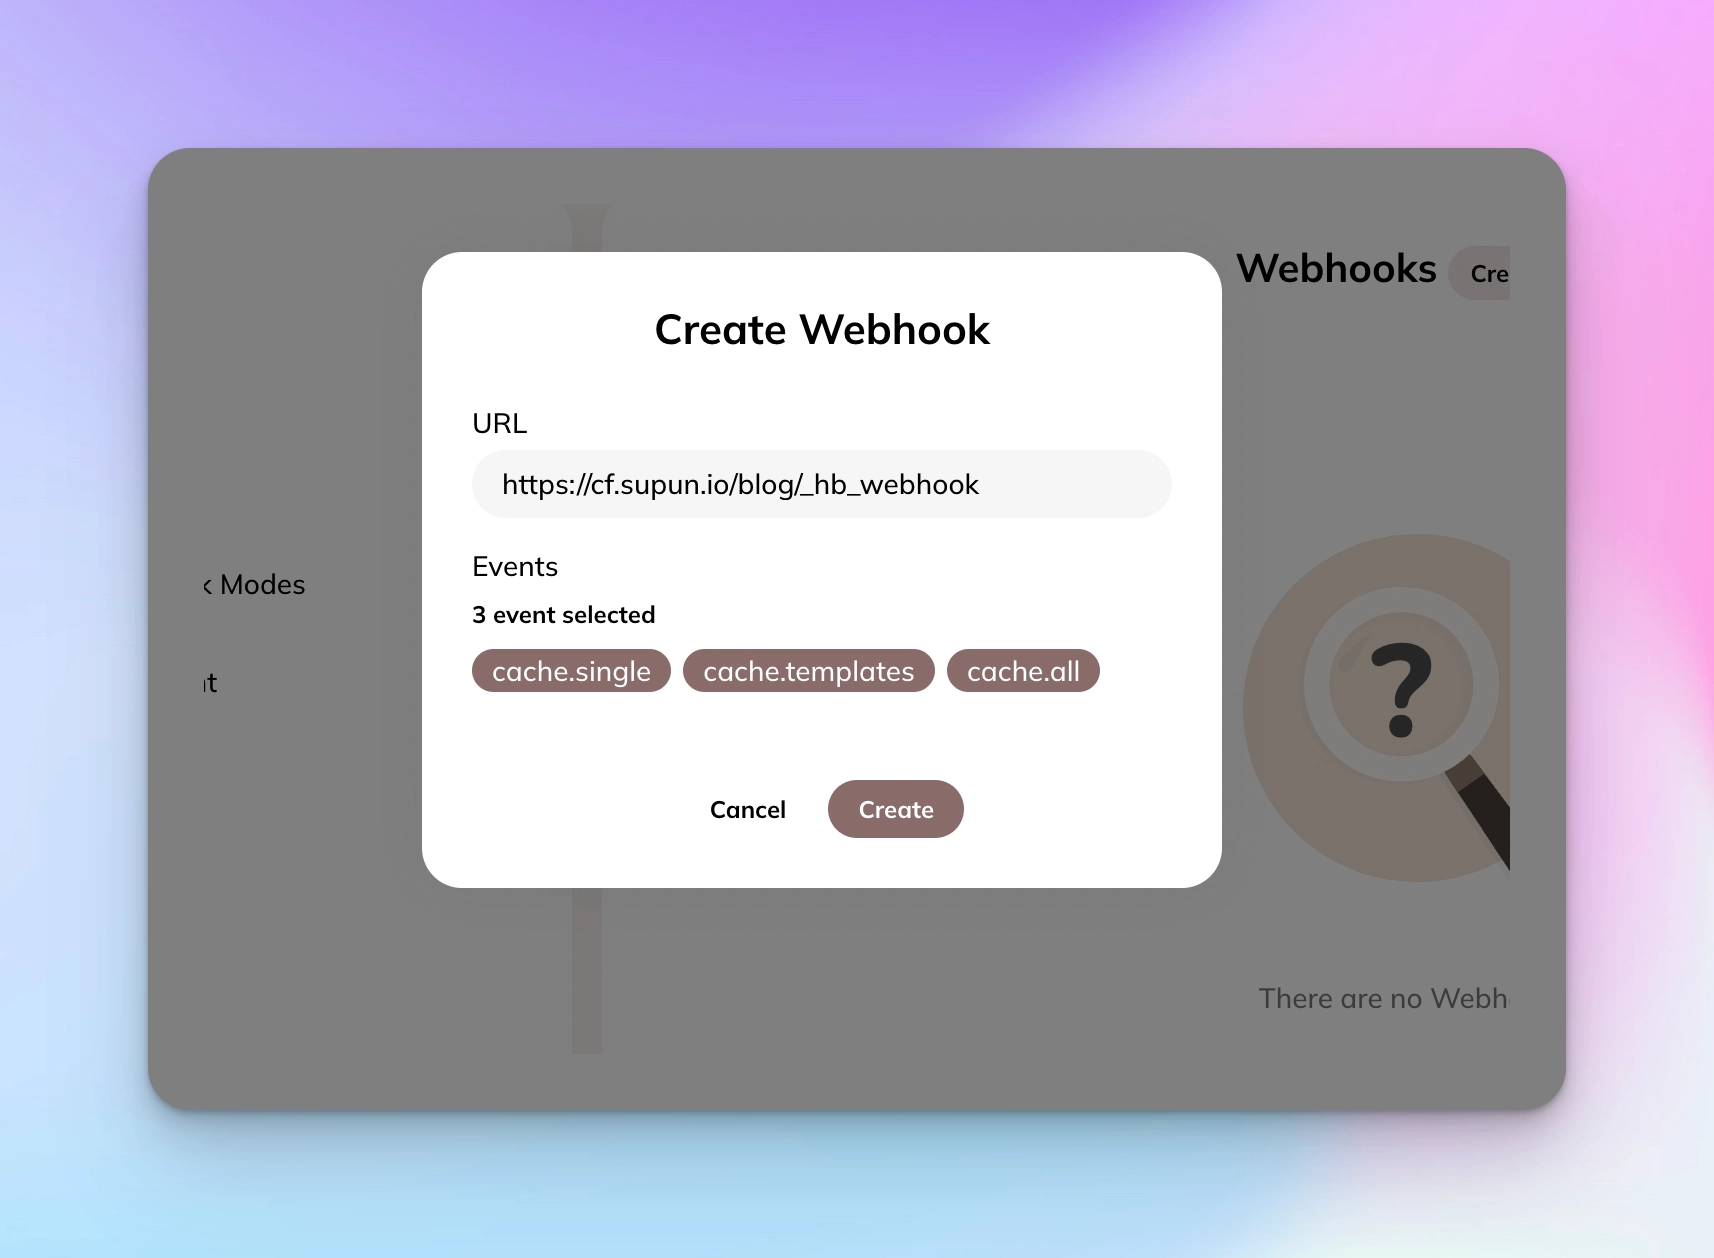 Create Webhook